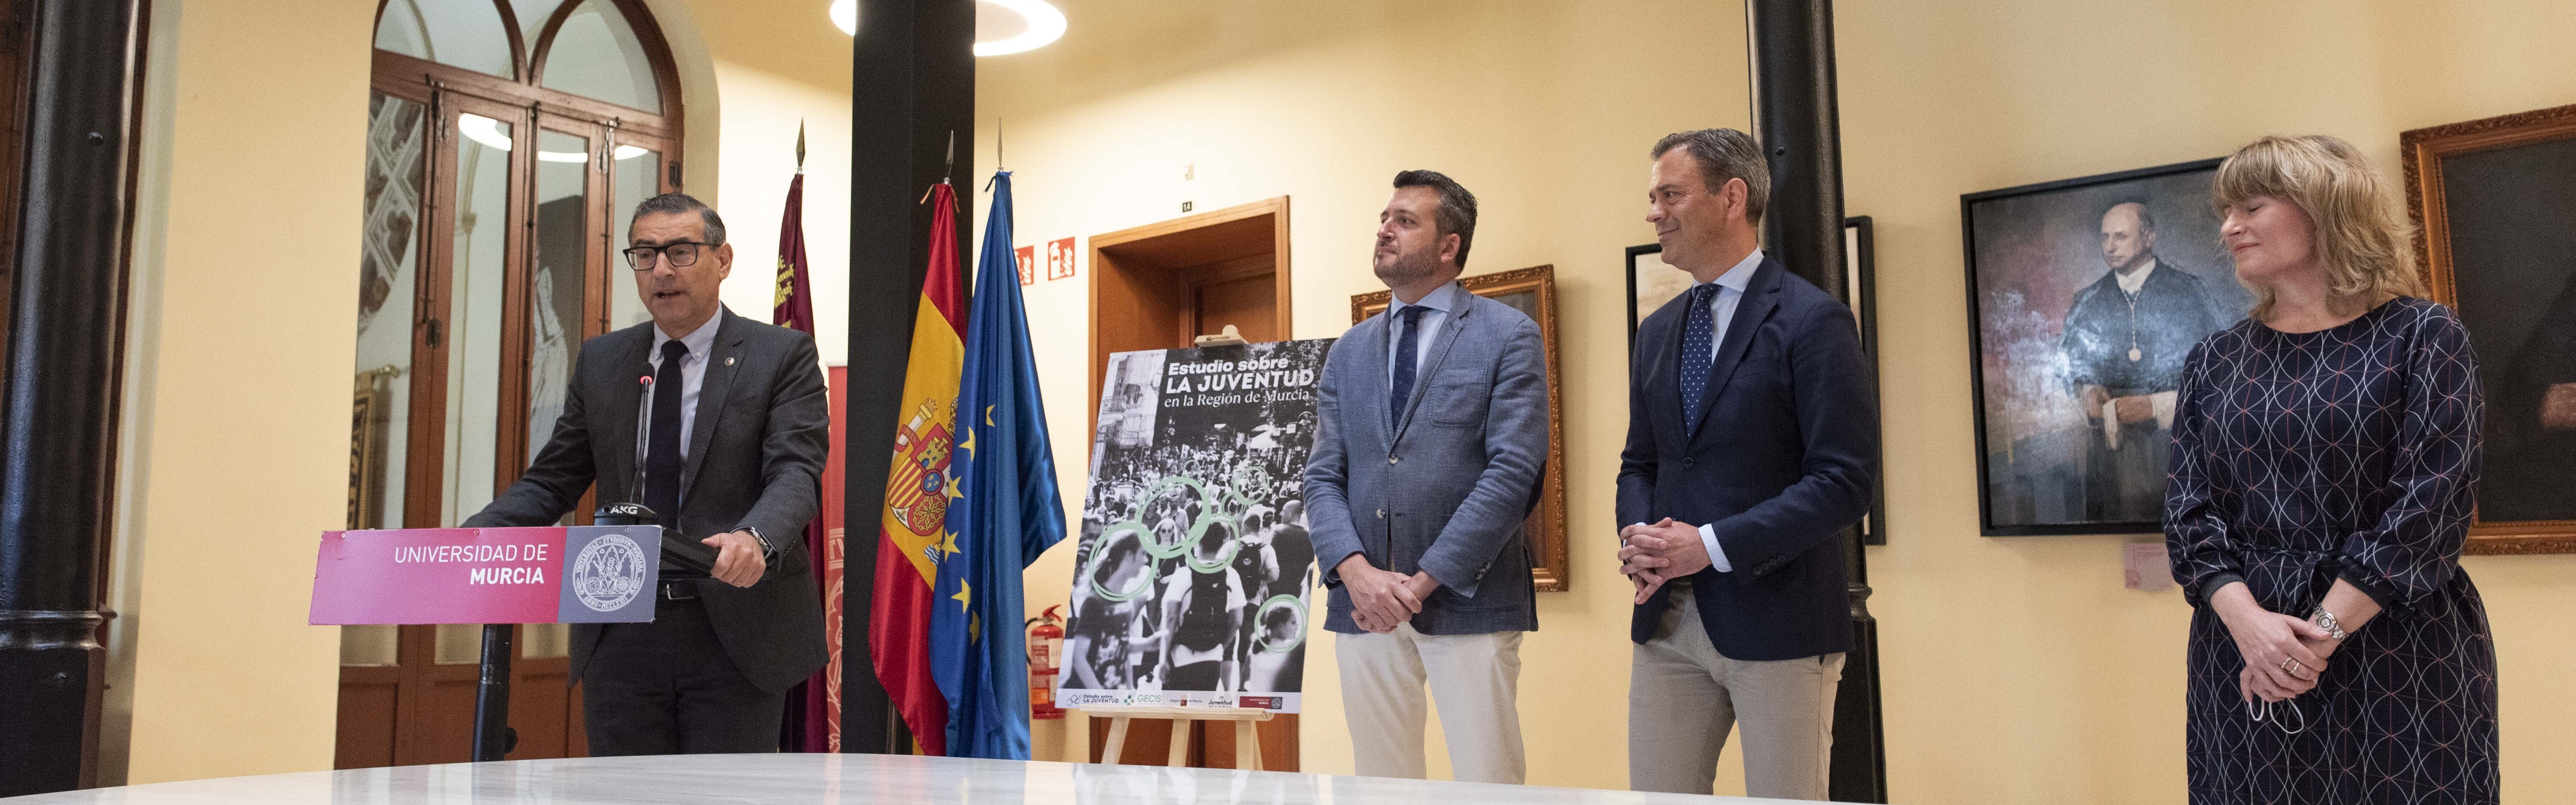 Nota de prensa - La Universidad de Murcia elaborará la primera radiografía completa de la juventud en la Región de Murcia